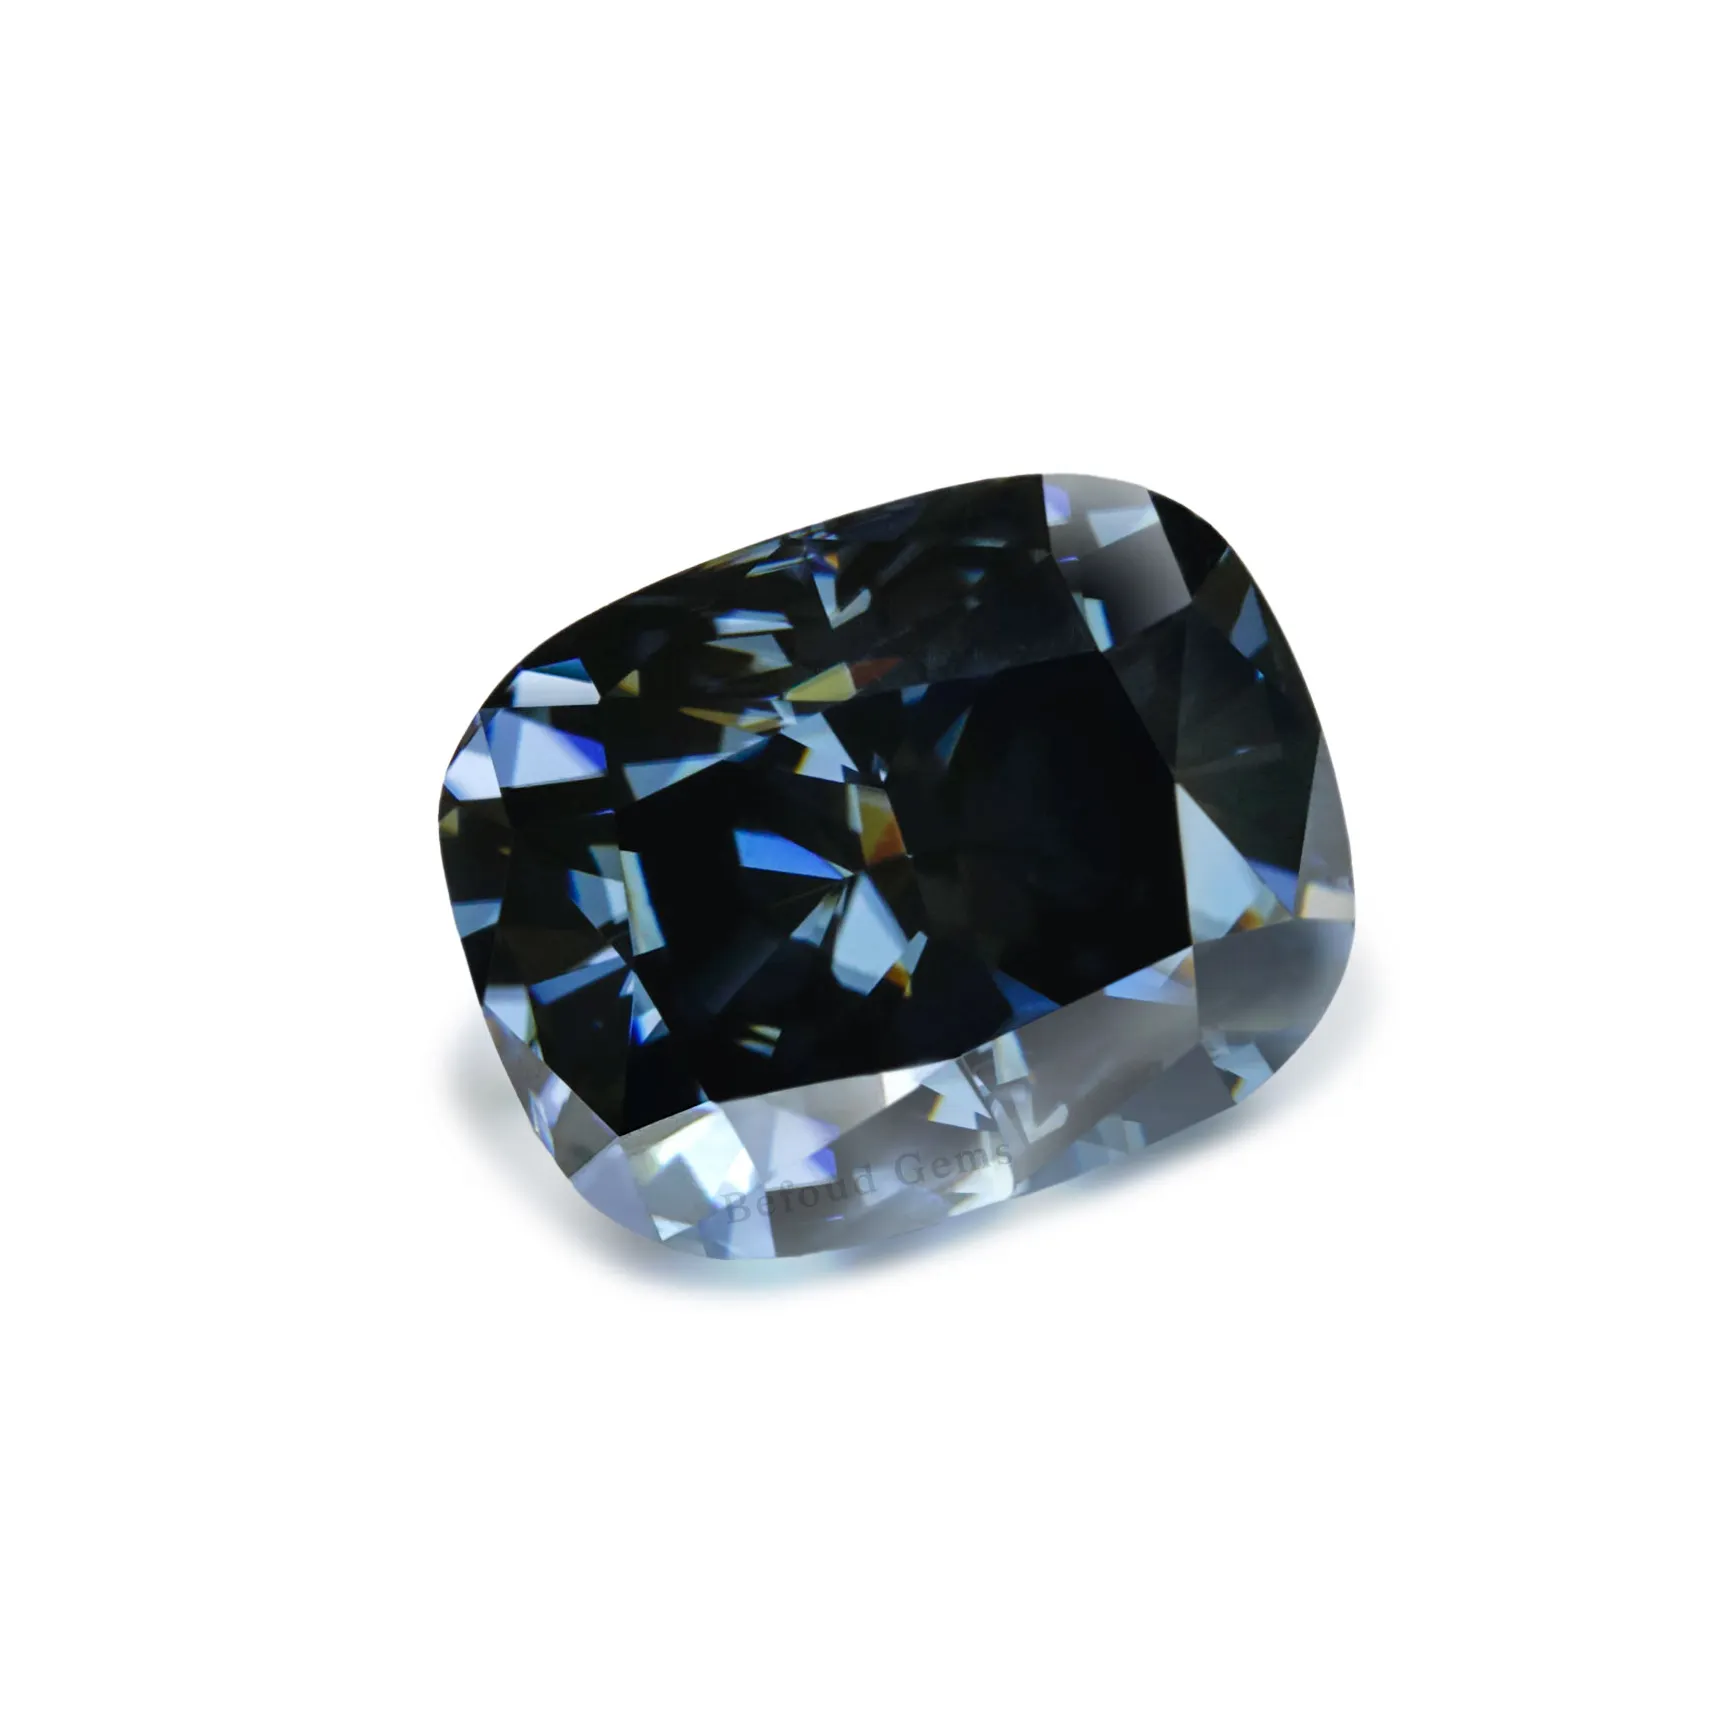 الأزرق أحجار بمقطع مشابه لشكل الوسائد المويسانتي 10*8 مللي متر تستخدم مختبر نمت أحجار كريمة مفكوكة مويسانيتي الماس للمجوهرات الذهب مطلي